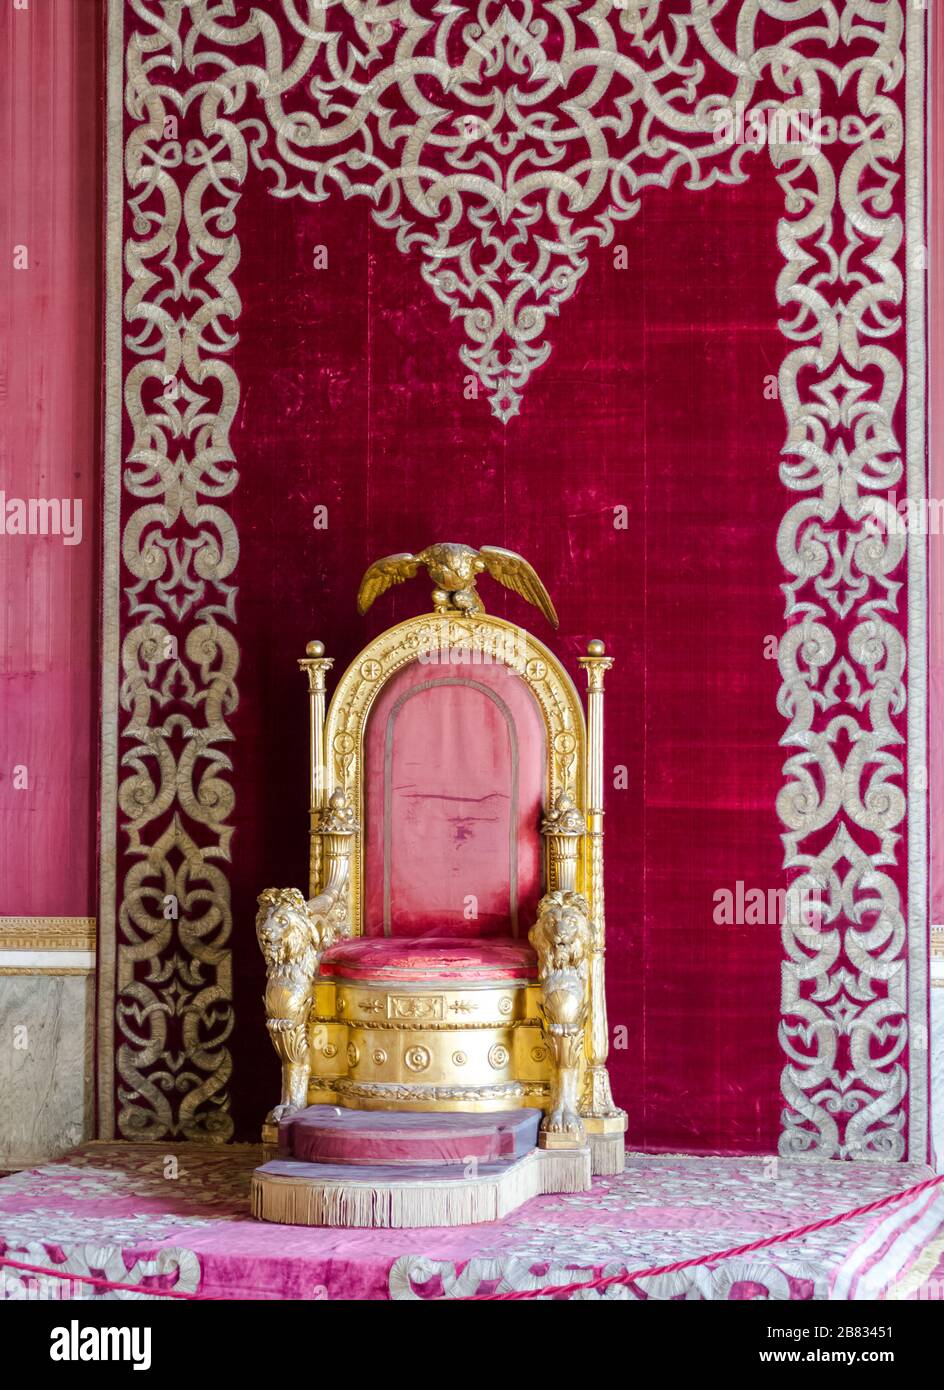 Palazzo reale di Napoli, settembre 2017. Il vecchio trono rosso e oro della dinastia borbonica delle due Sicilie regna con il simbolo della casa Foto Stock